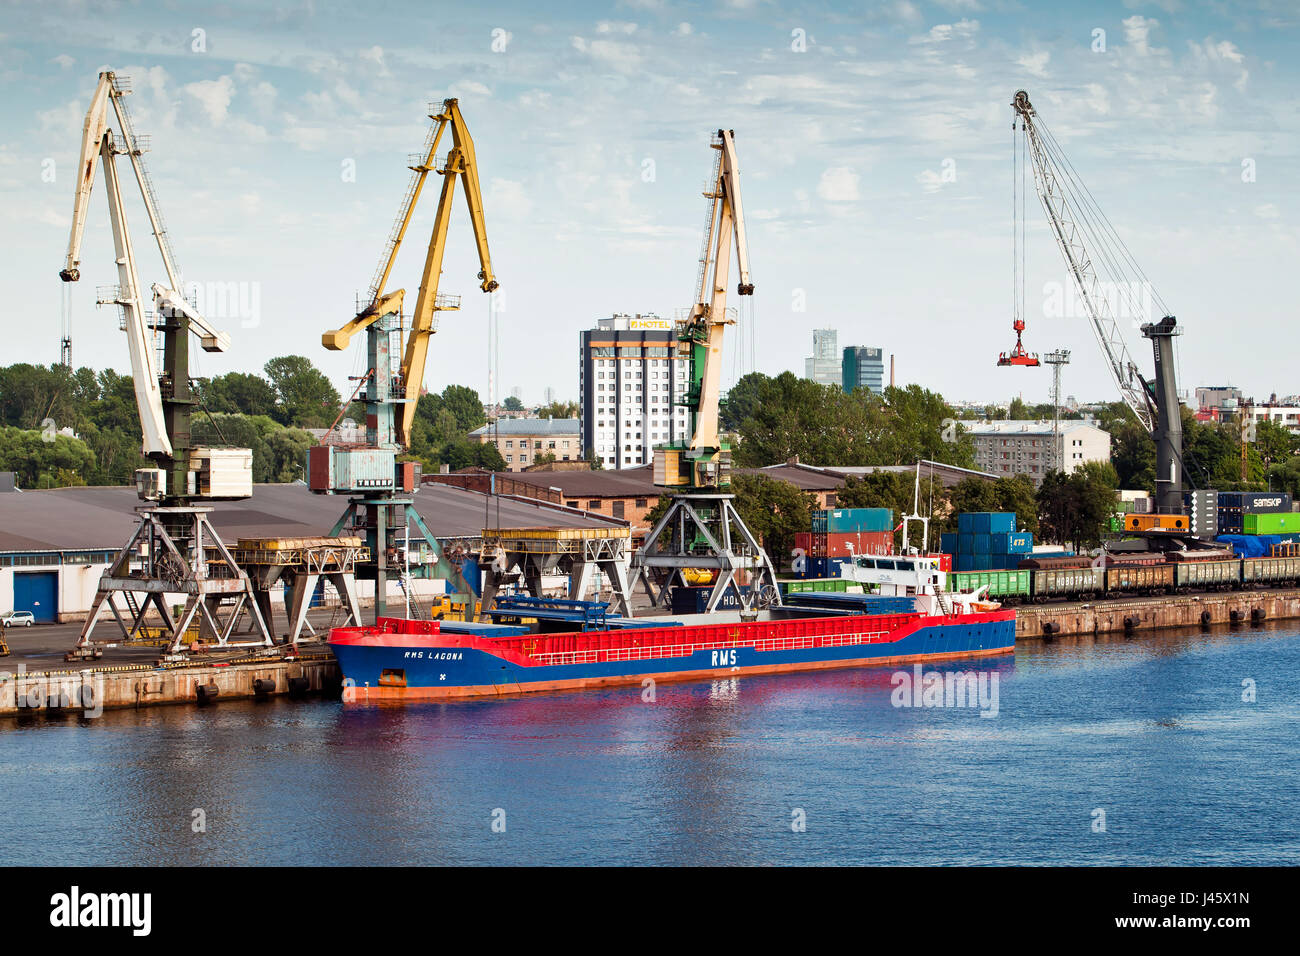 Port in Riga city, Latvia Stock Photo